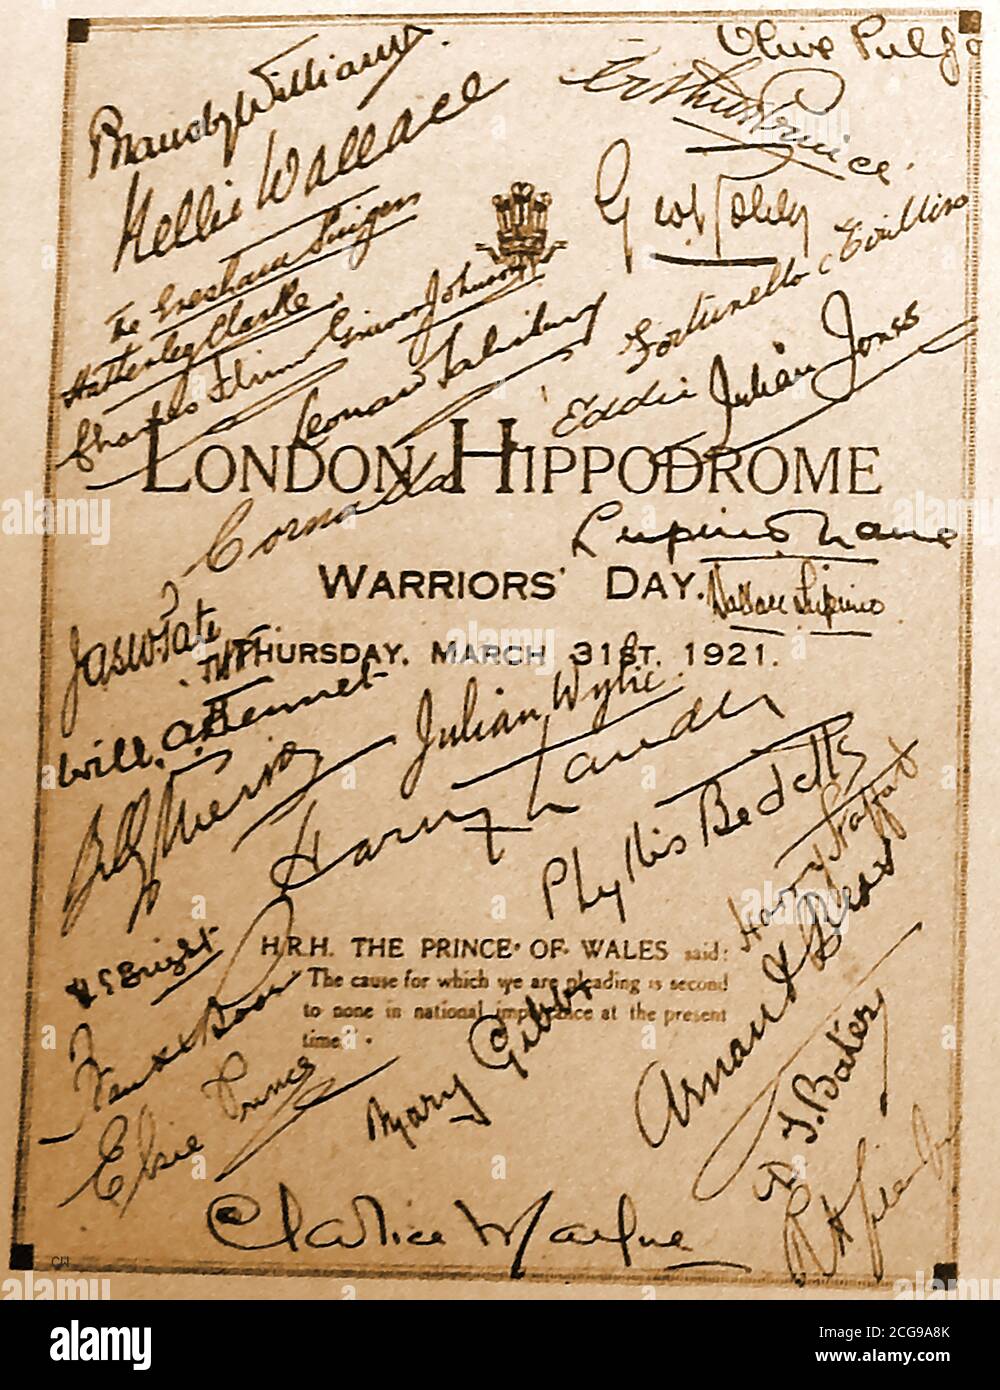 Marzo 31 1921 - firmas de artistas en el programa del día del Guerrero (ex militares) (incluyendo Harry Lauder -Center) se presentó frente al Príncipe de Gales en el Hipódromo de Londres, Inglaterra Foto de stock